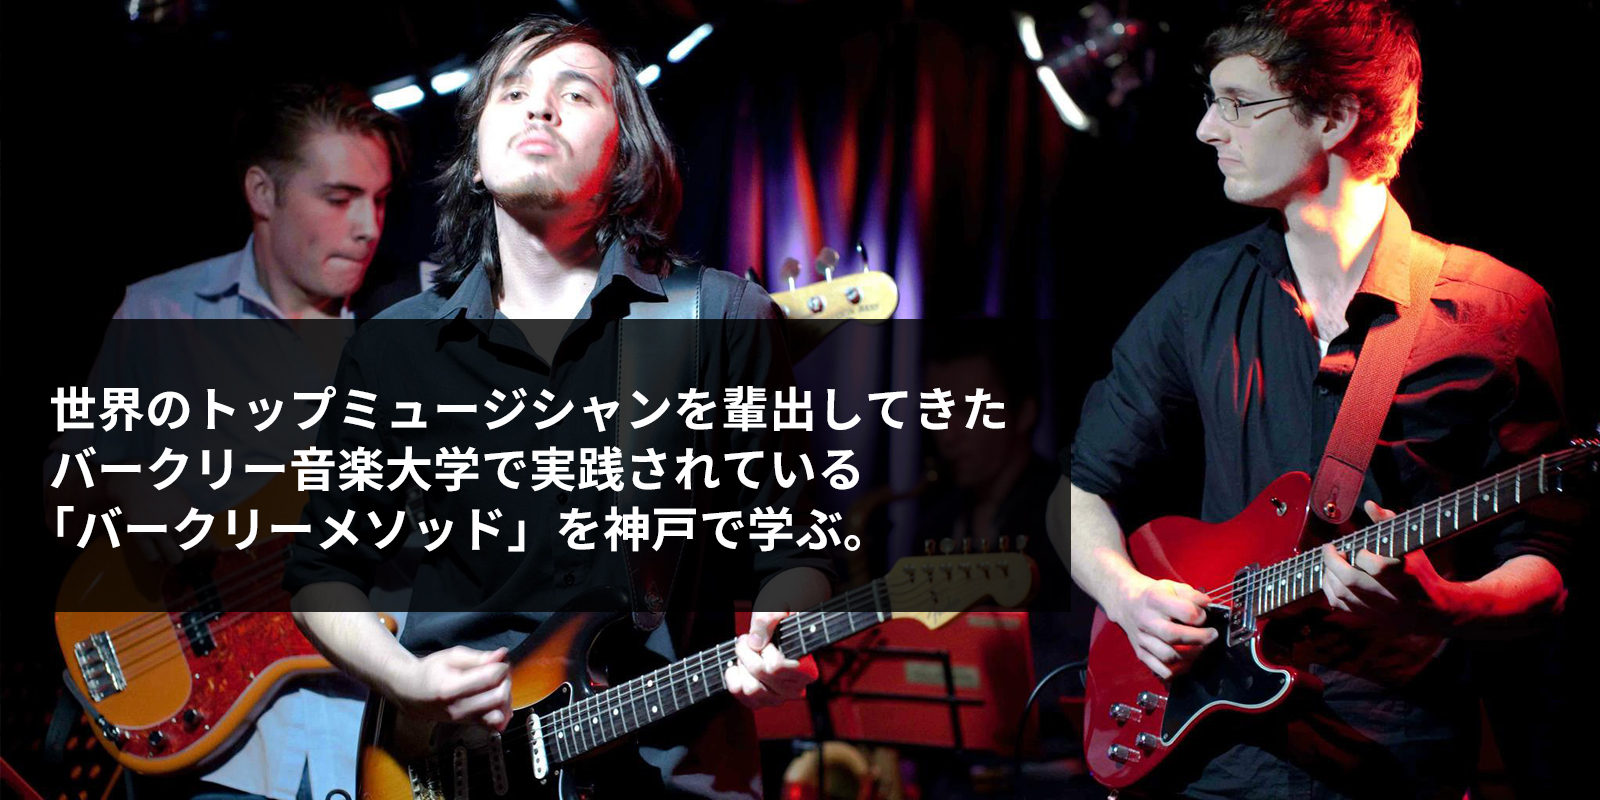 世界のトップミュージシャンを輩出してきたバークリー音楽大学で実践されている「バークリーメソッド」を神戸で学ぶ。